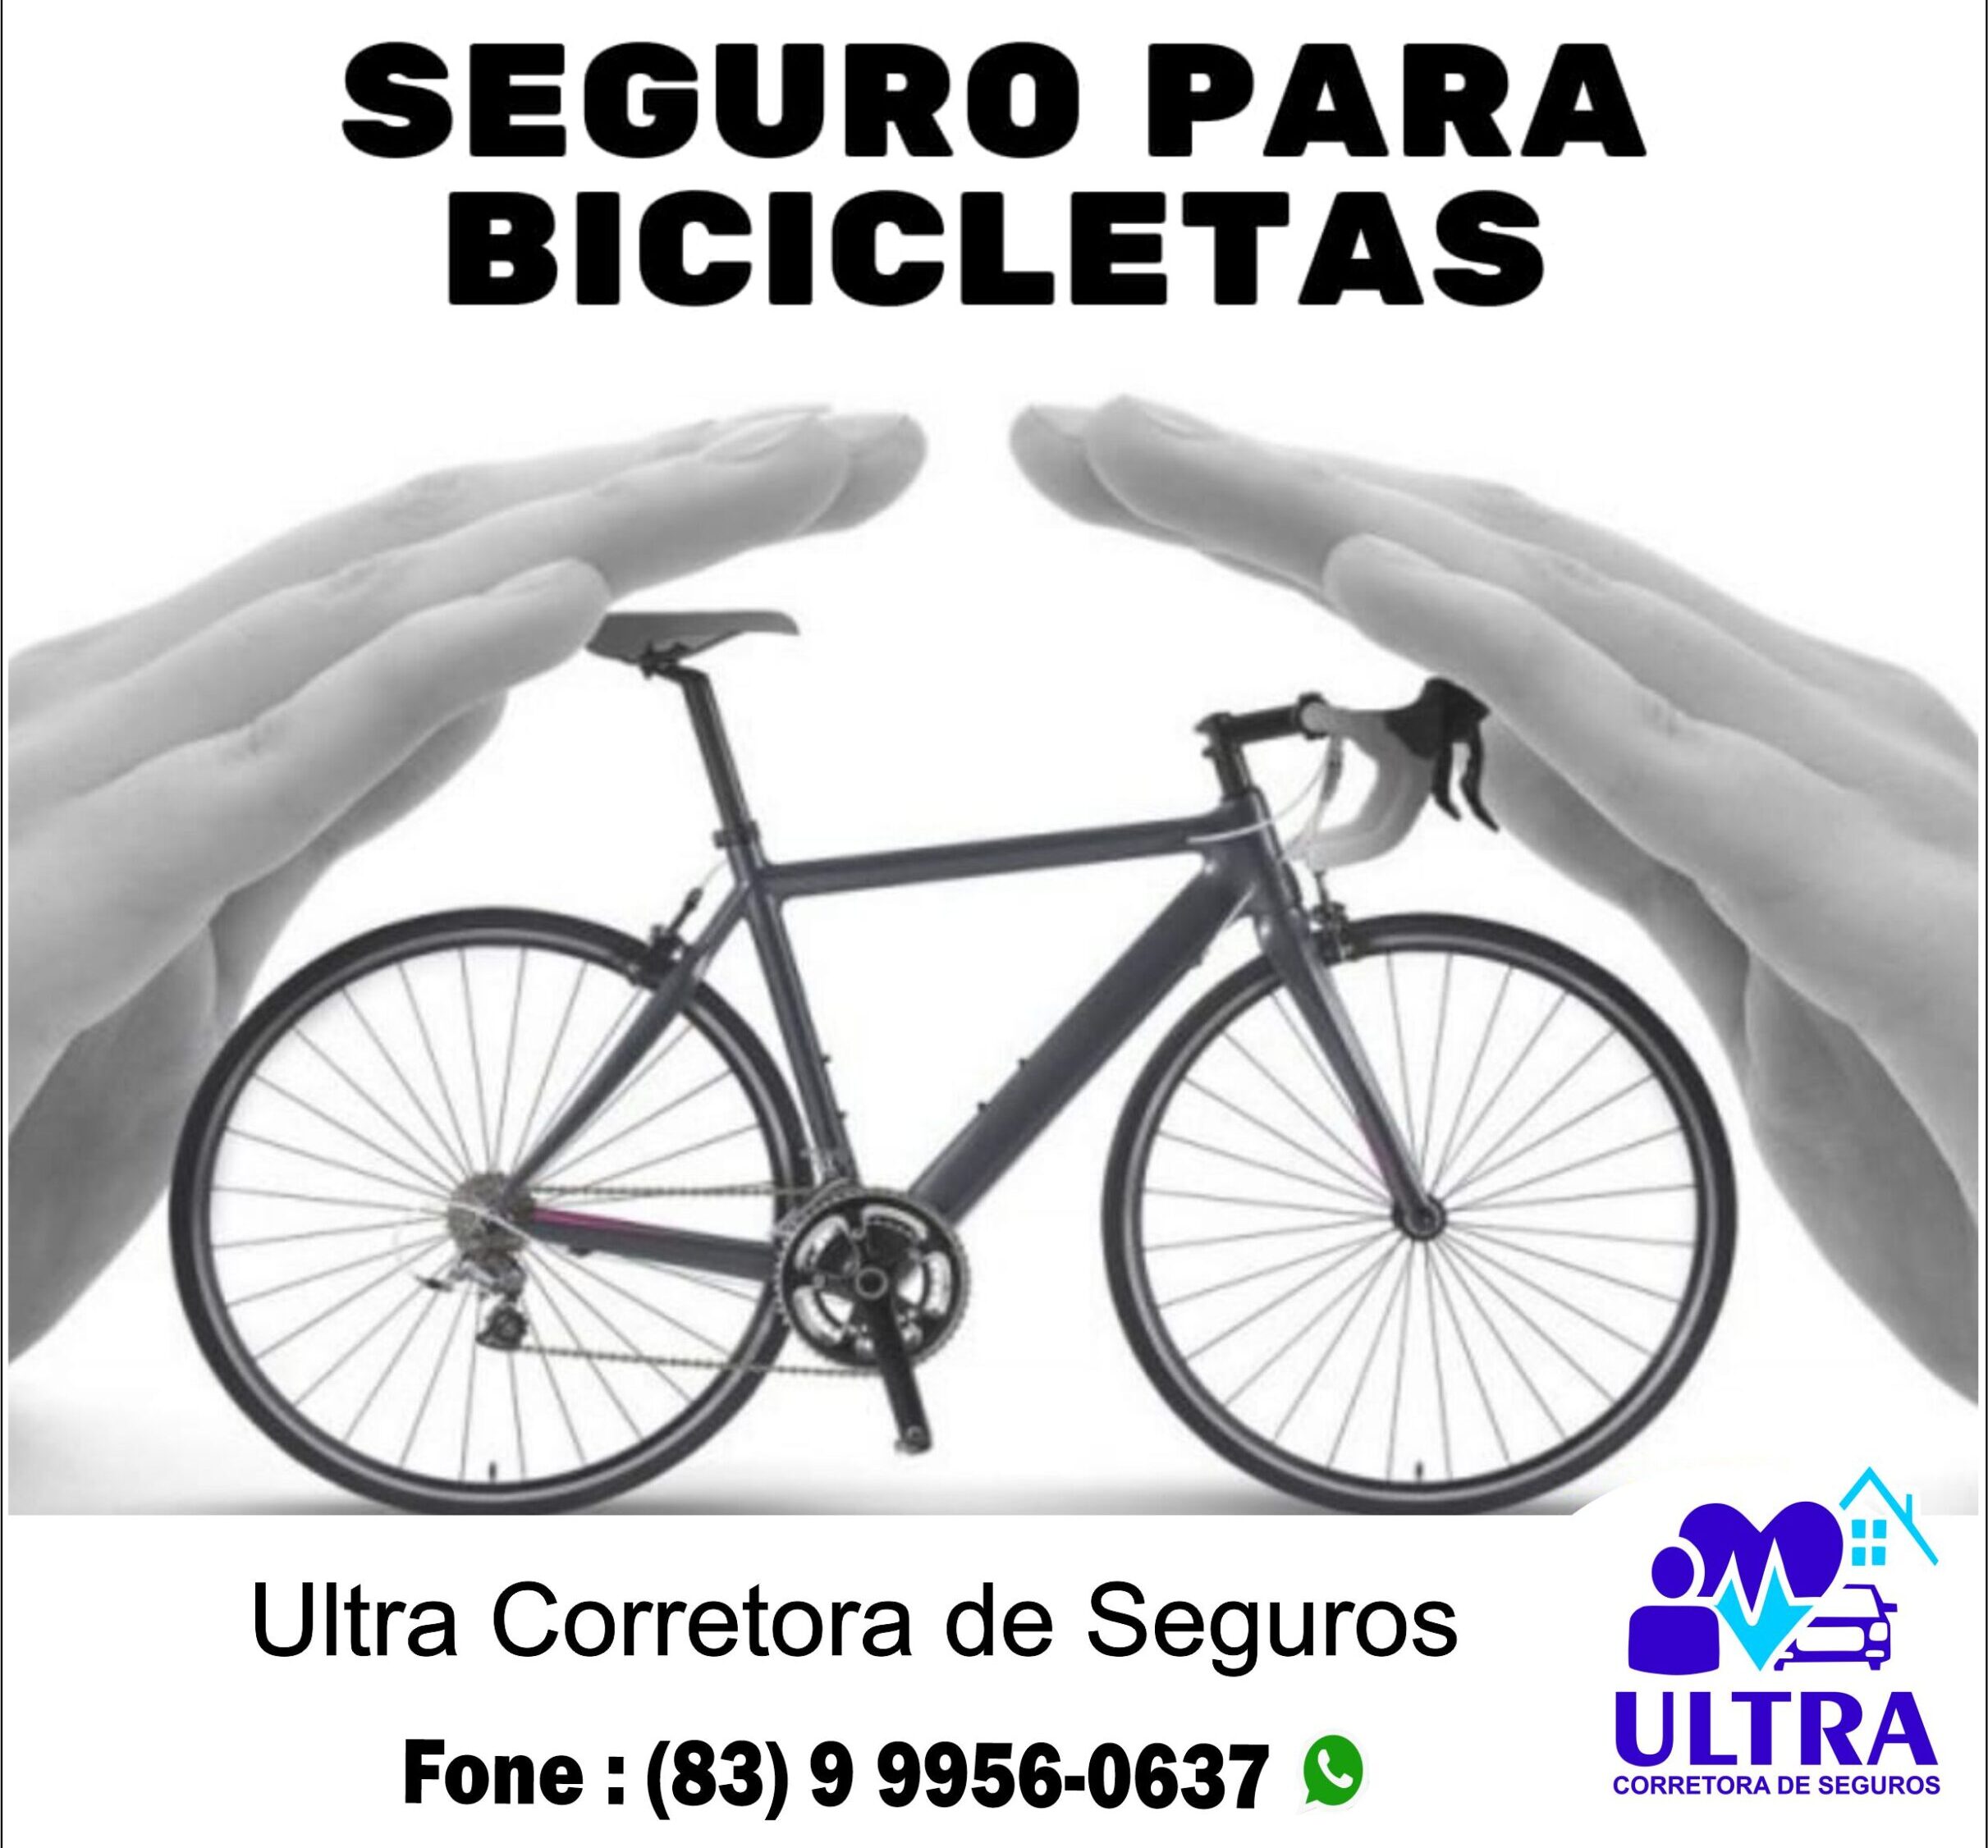 1626522671374_ultra-1-scaled-e1626524320820 Em Monteiro: Seguro Para Bicicleta é na Ultra Corretora de Seguros